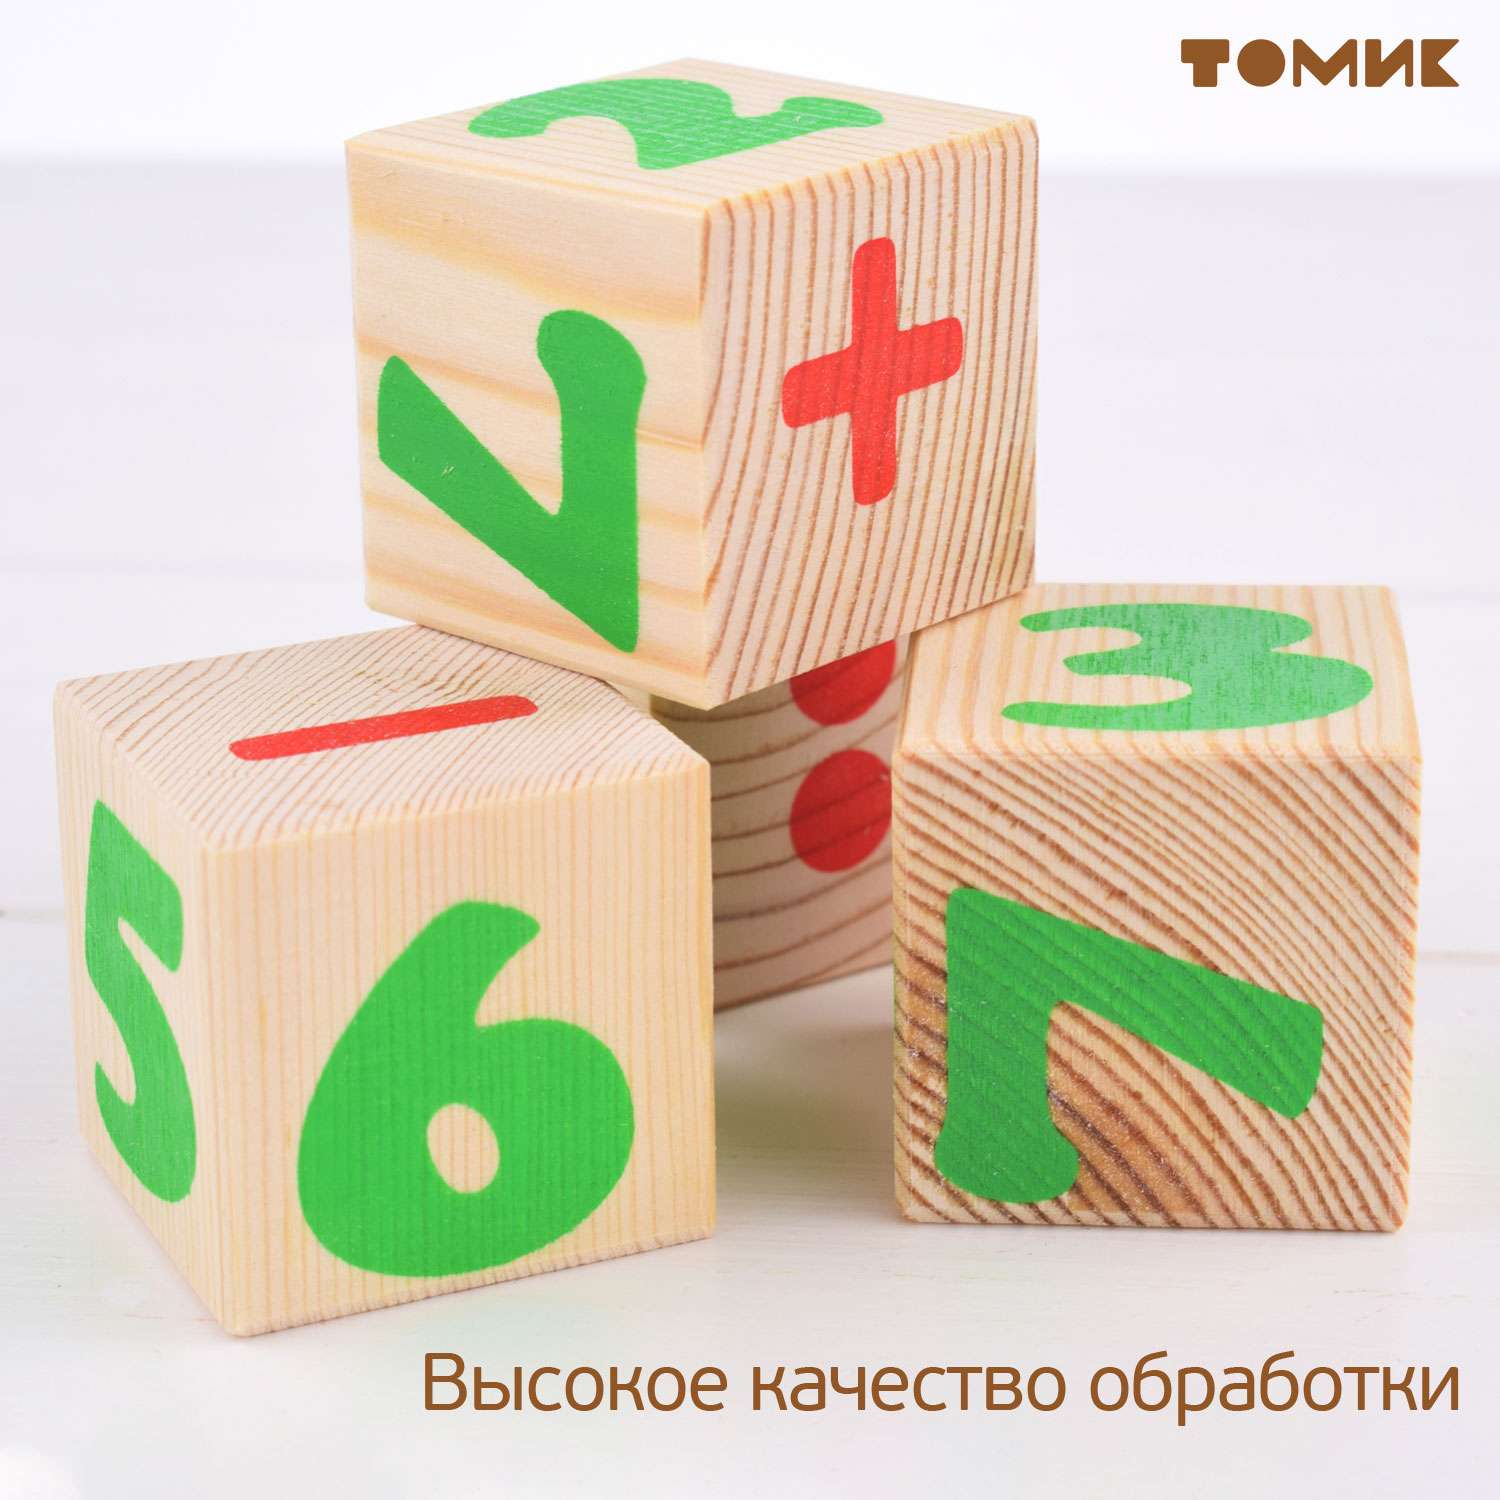 Кубики для детей Томик цифры 12 шт. 1111-3 - фото 4